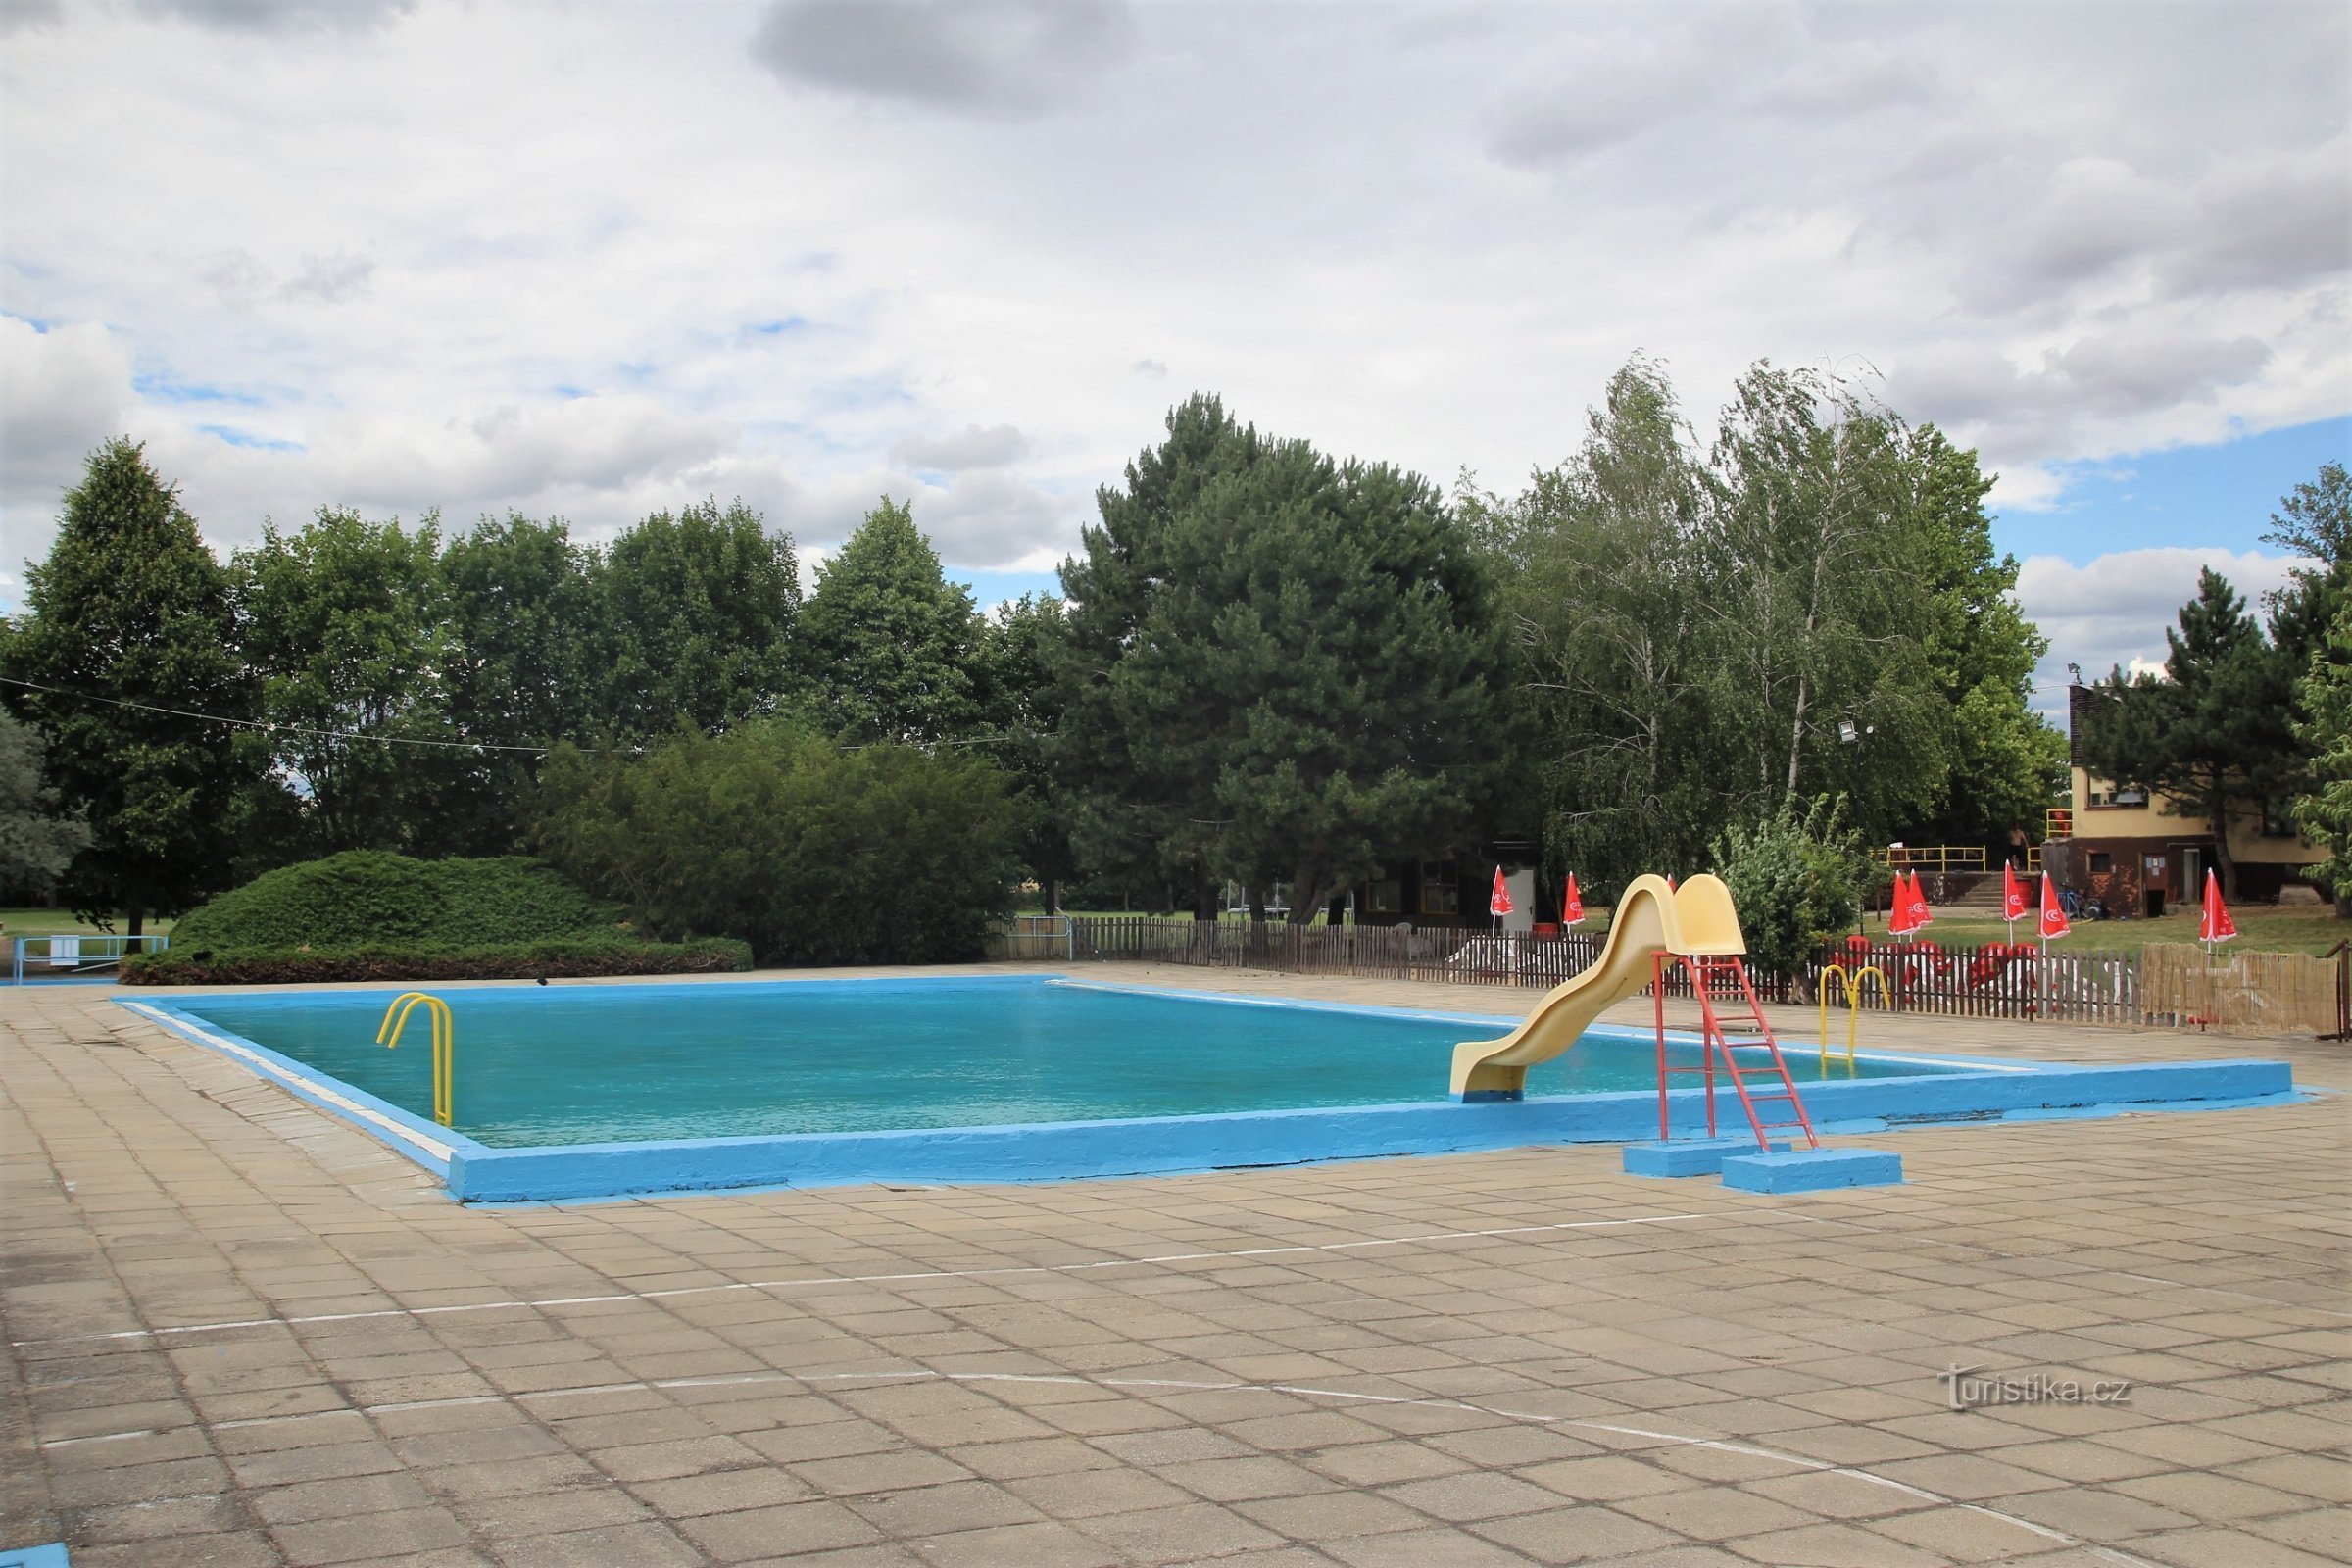 La piscina de la ciudad de Židlochovice antes de abrir en junio de 2017